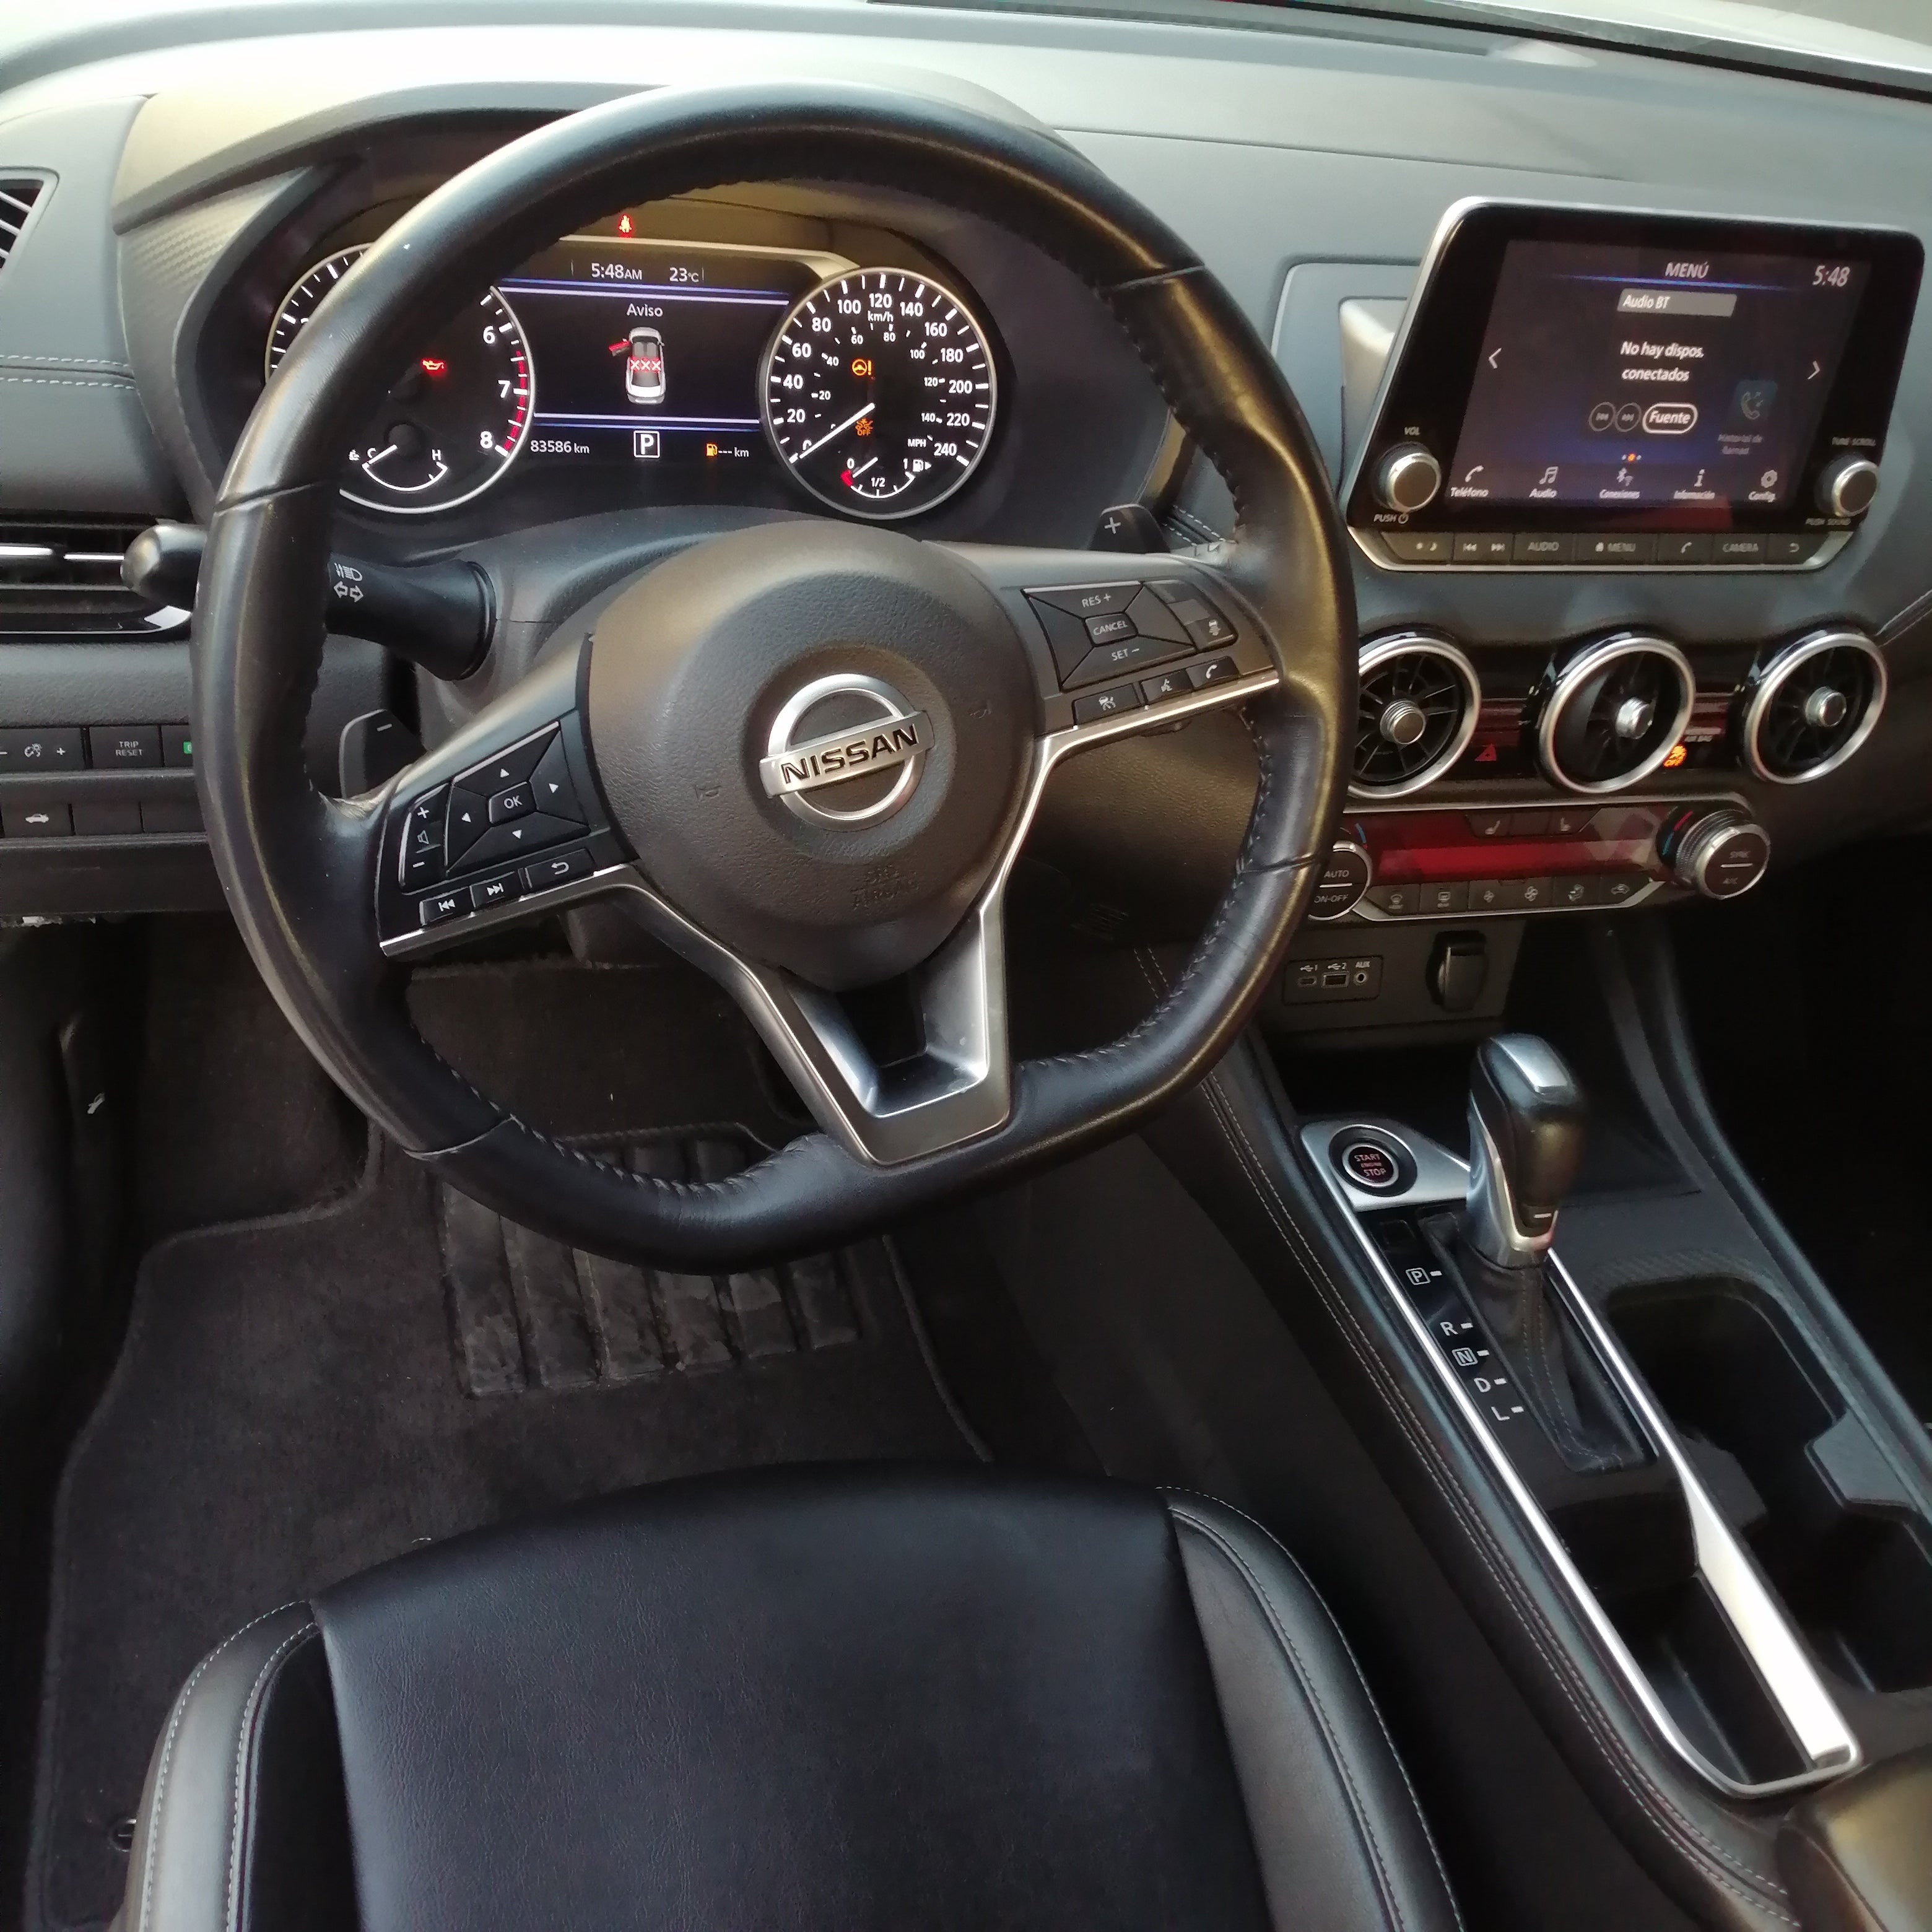 2020 Nissan Sentra EXCLUSIVE L4 2.0L 145 CP 4 PUERTAS AUT PIEL BA AA QC